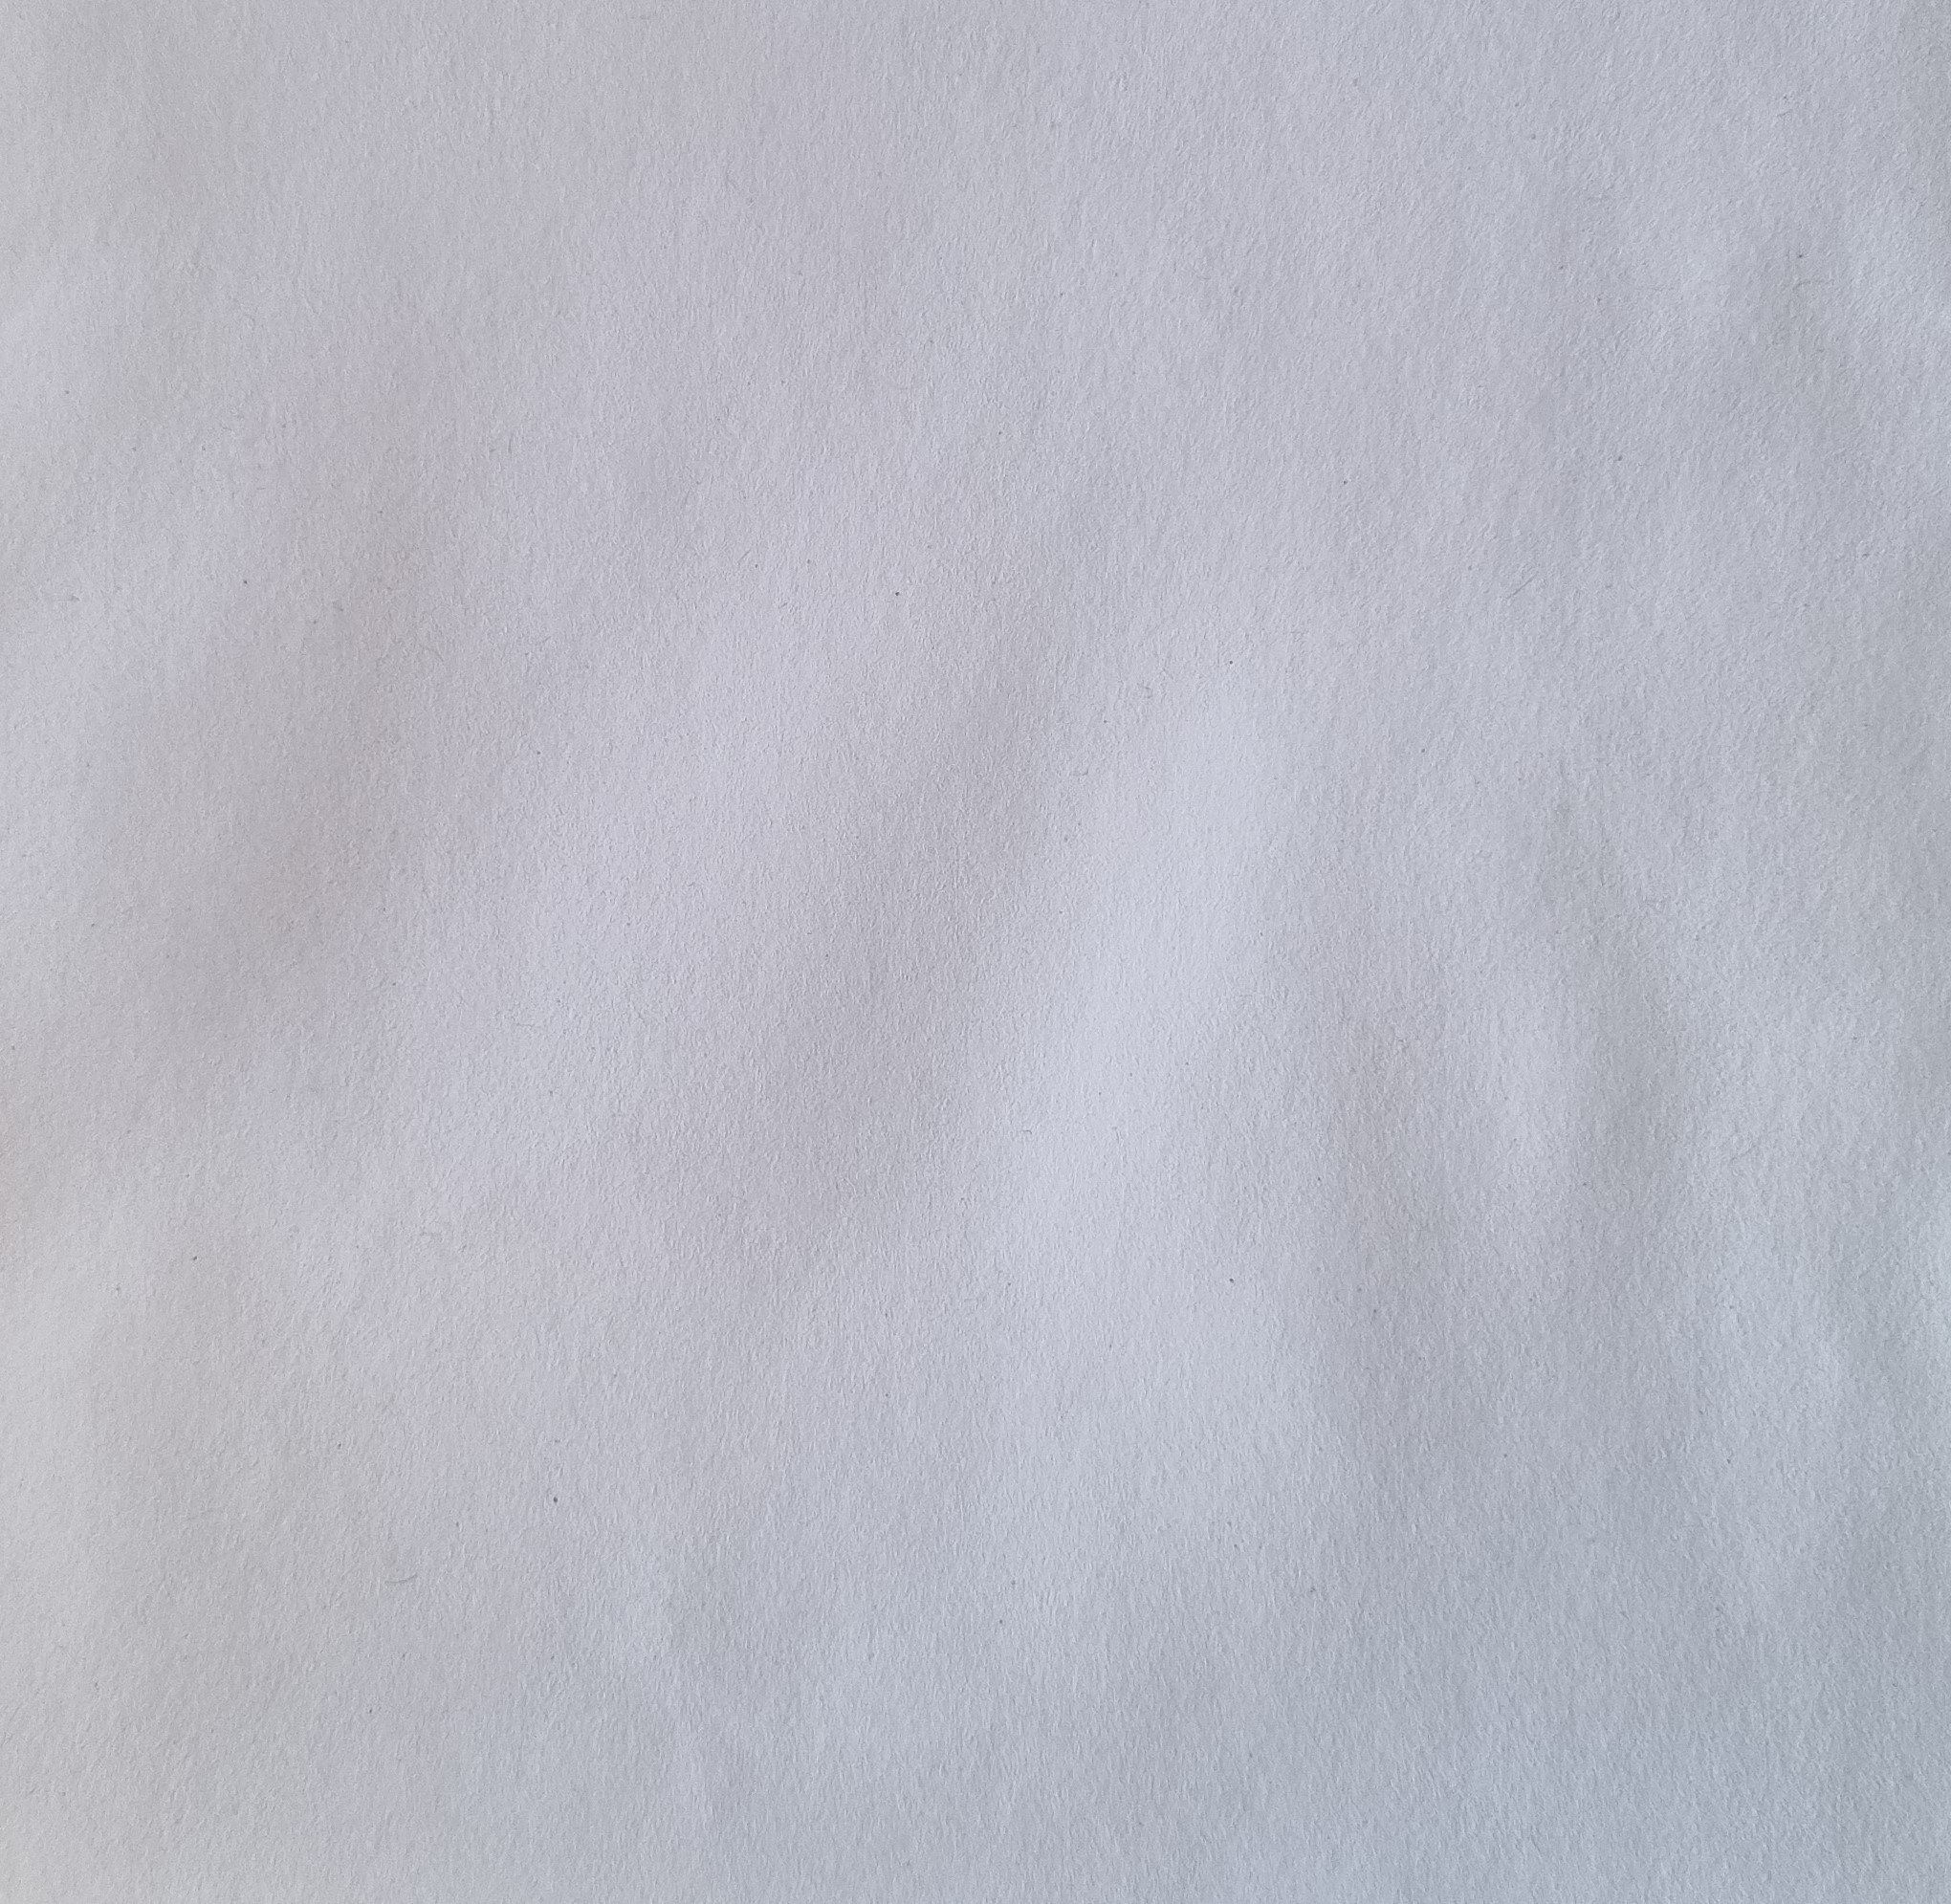 16 x 16 cm # 25 St Briefumschläge Weiß Quadratisch Nassklebend 